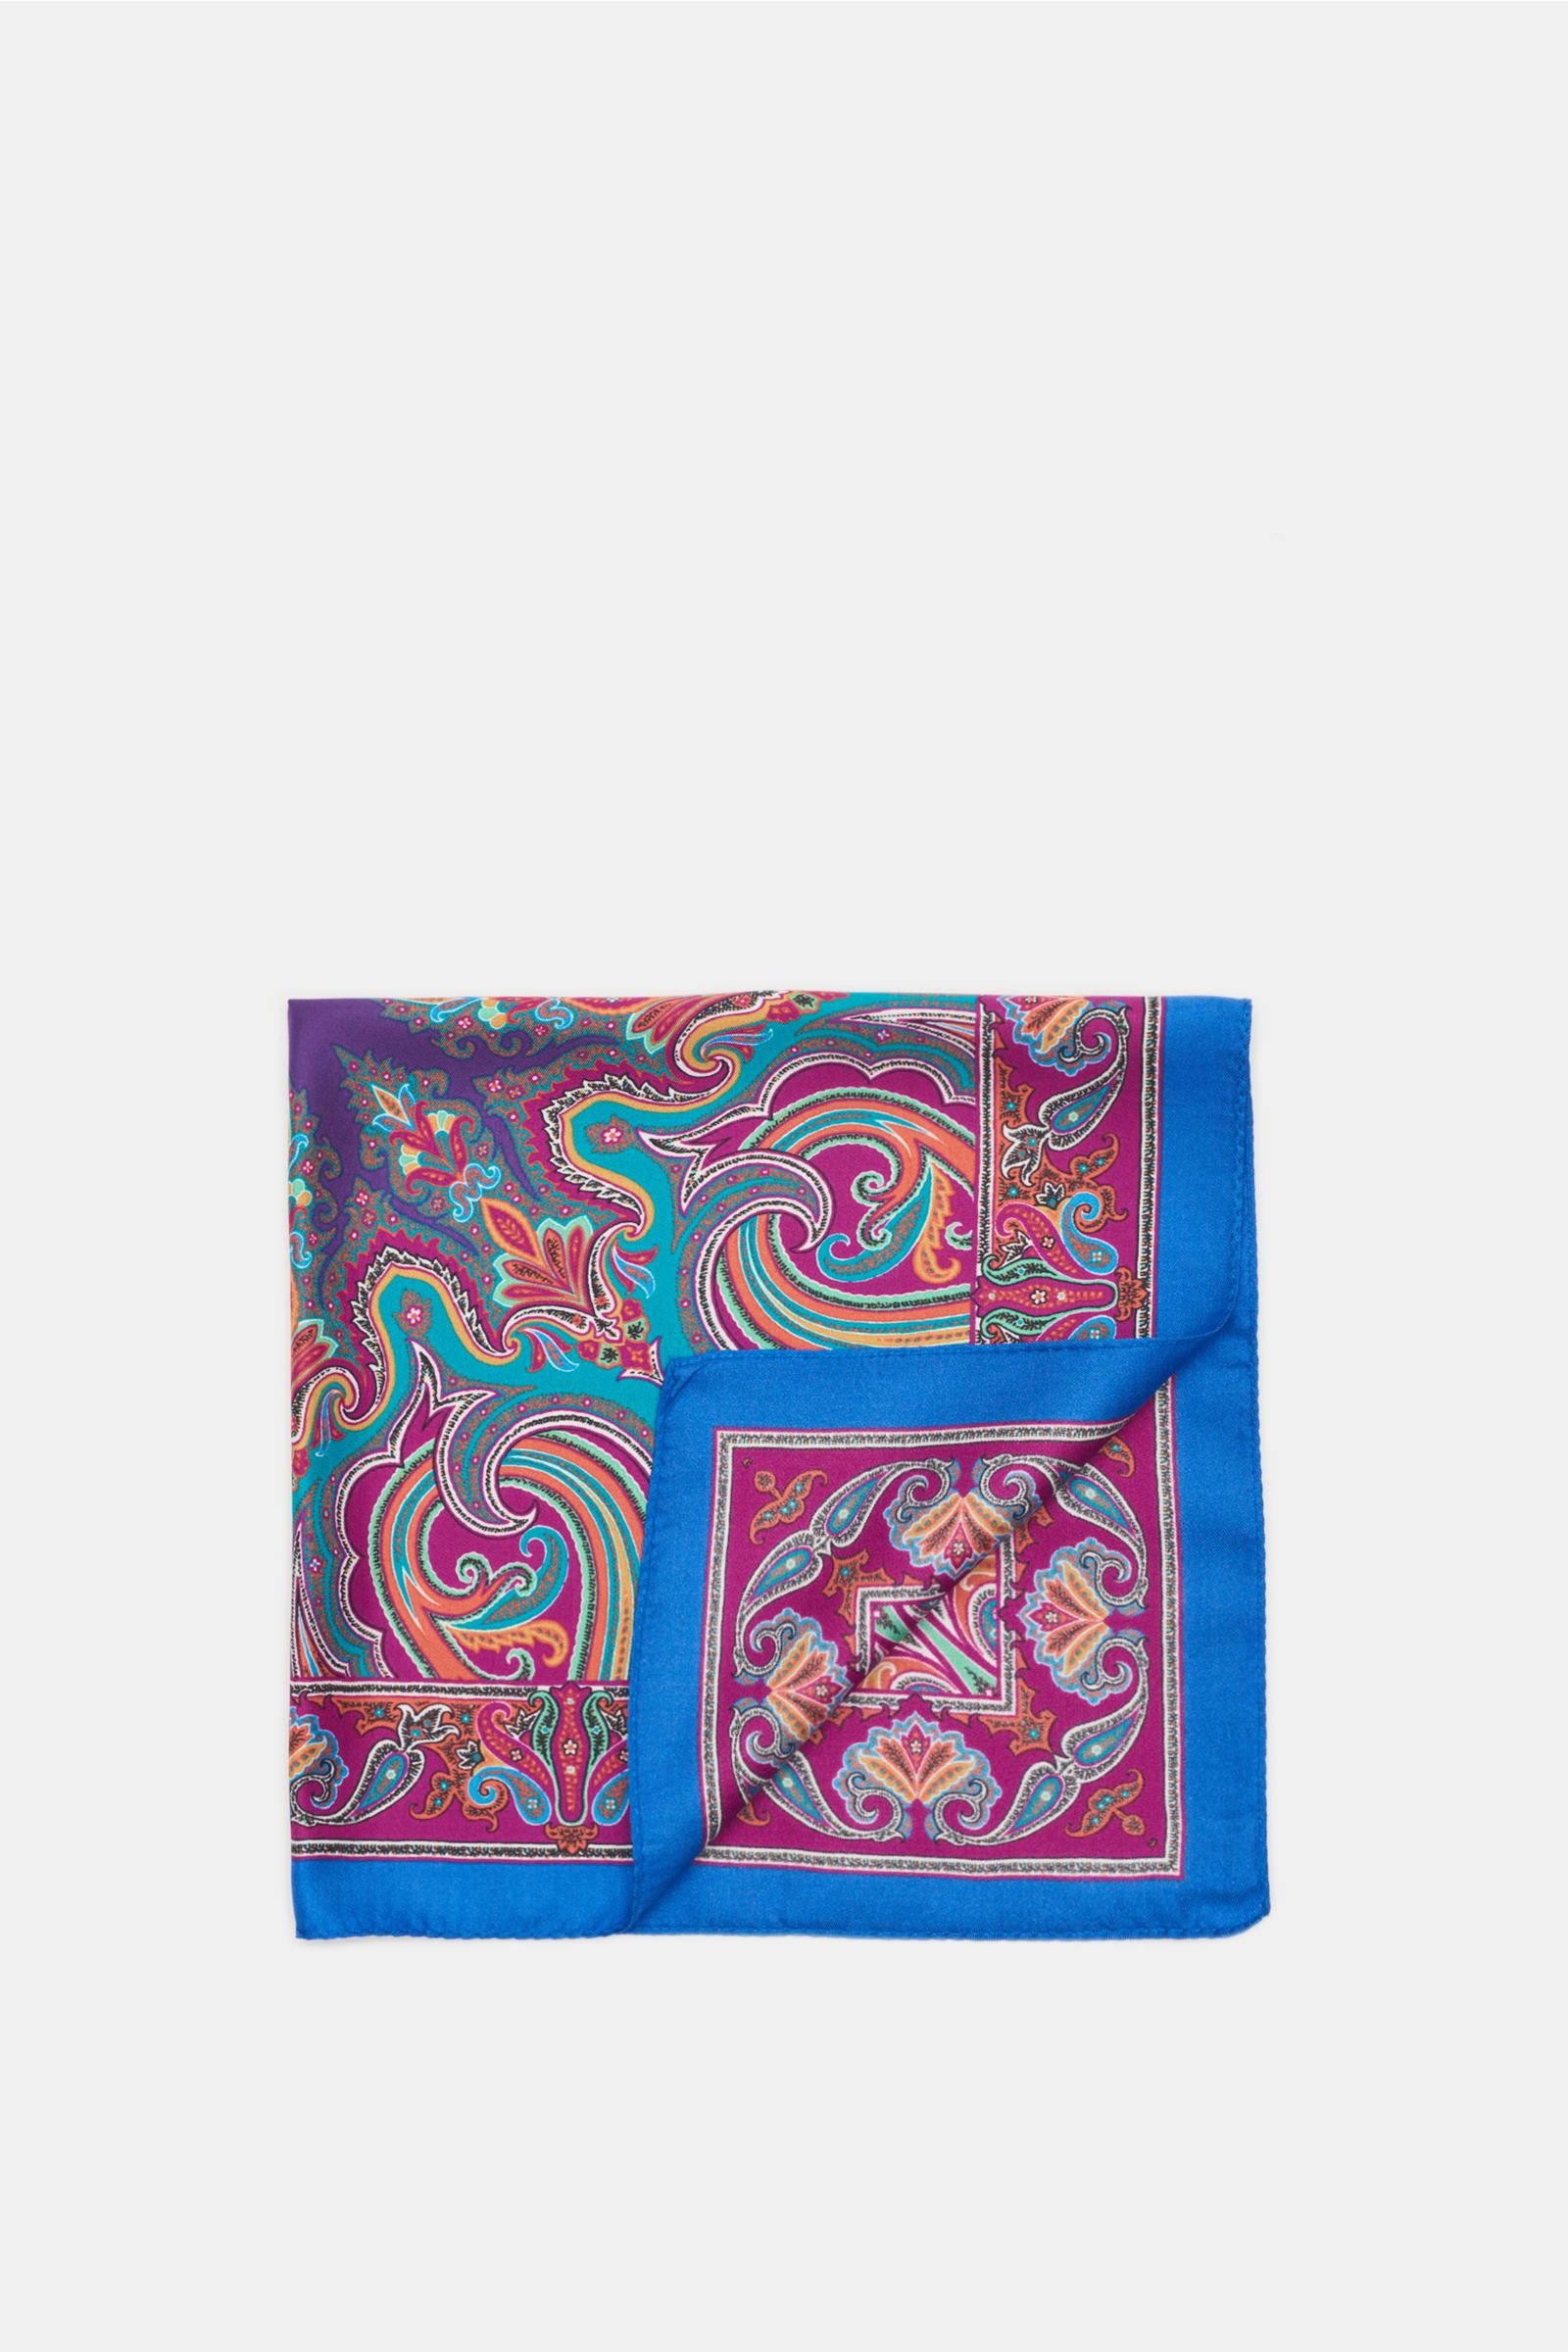 Pocket square blue/teal patterned